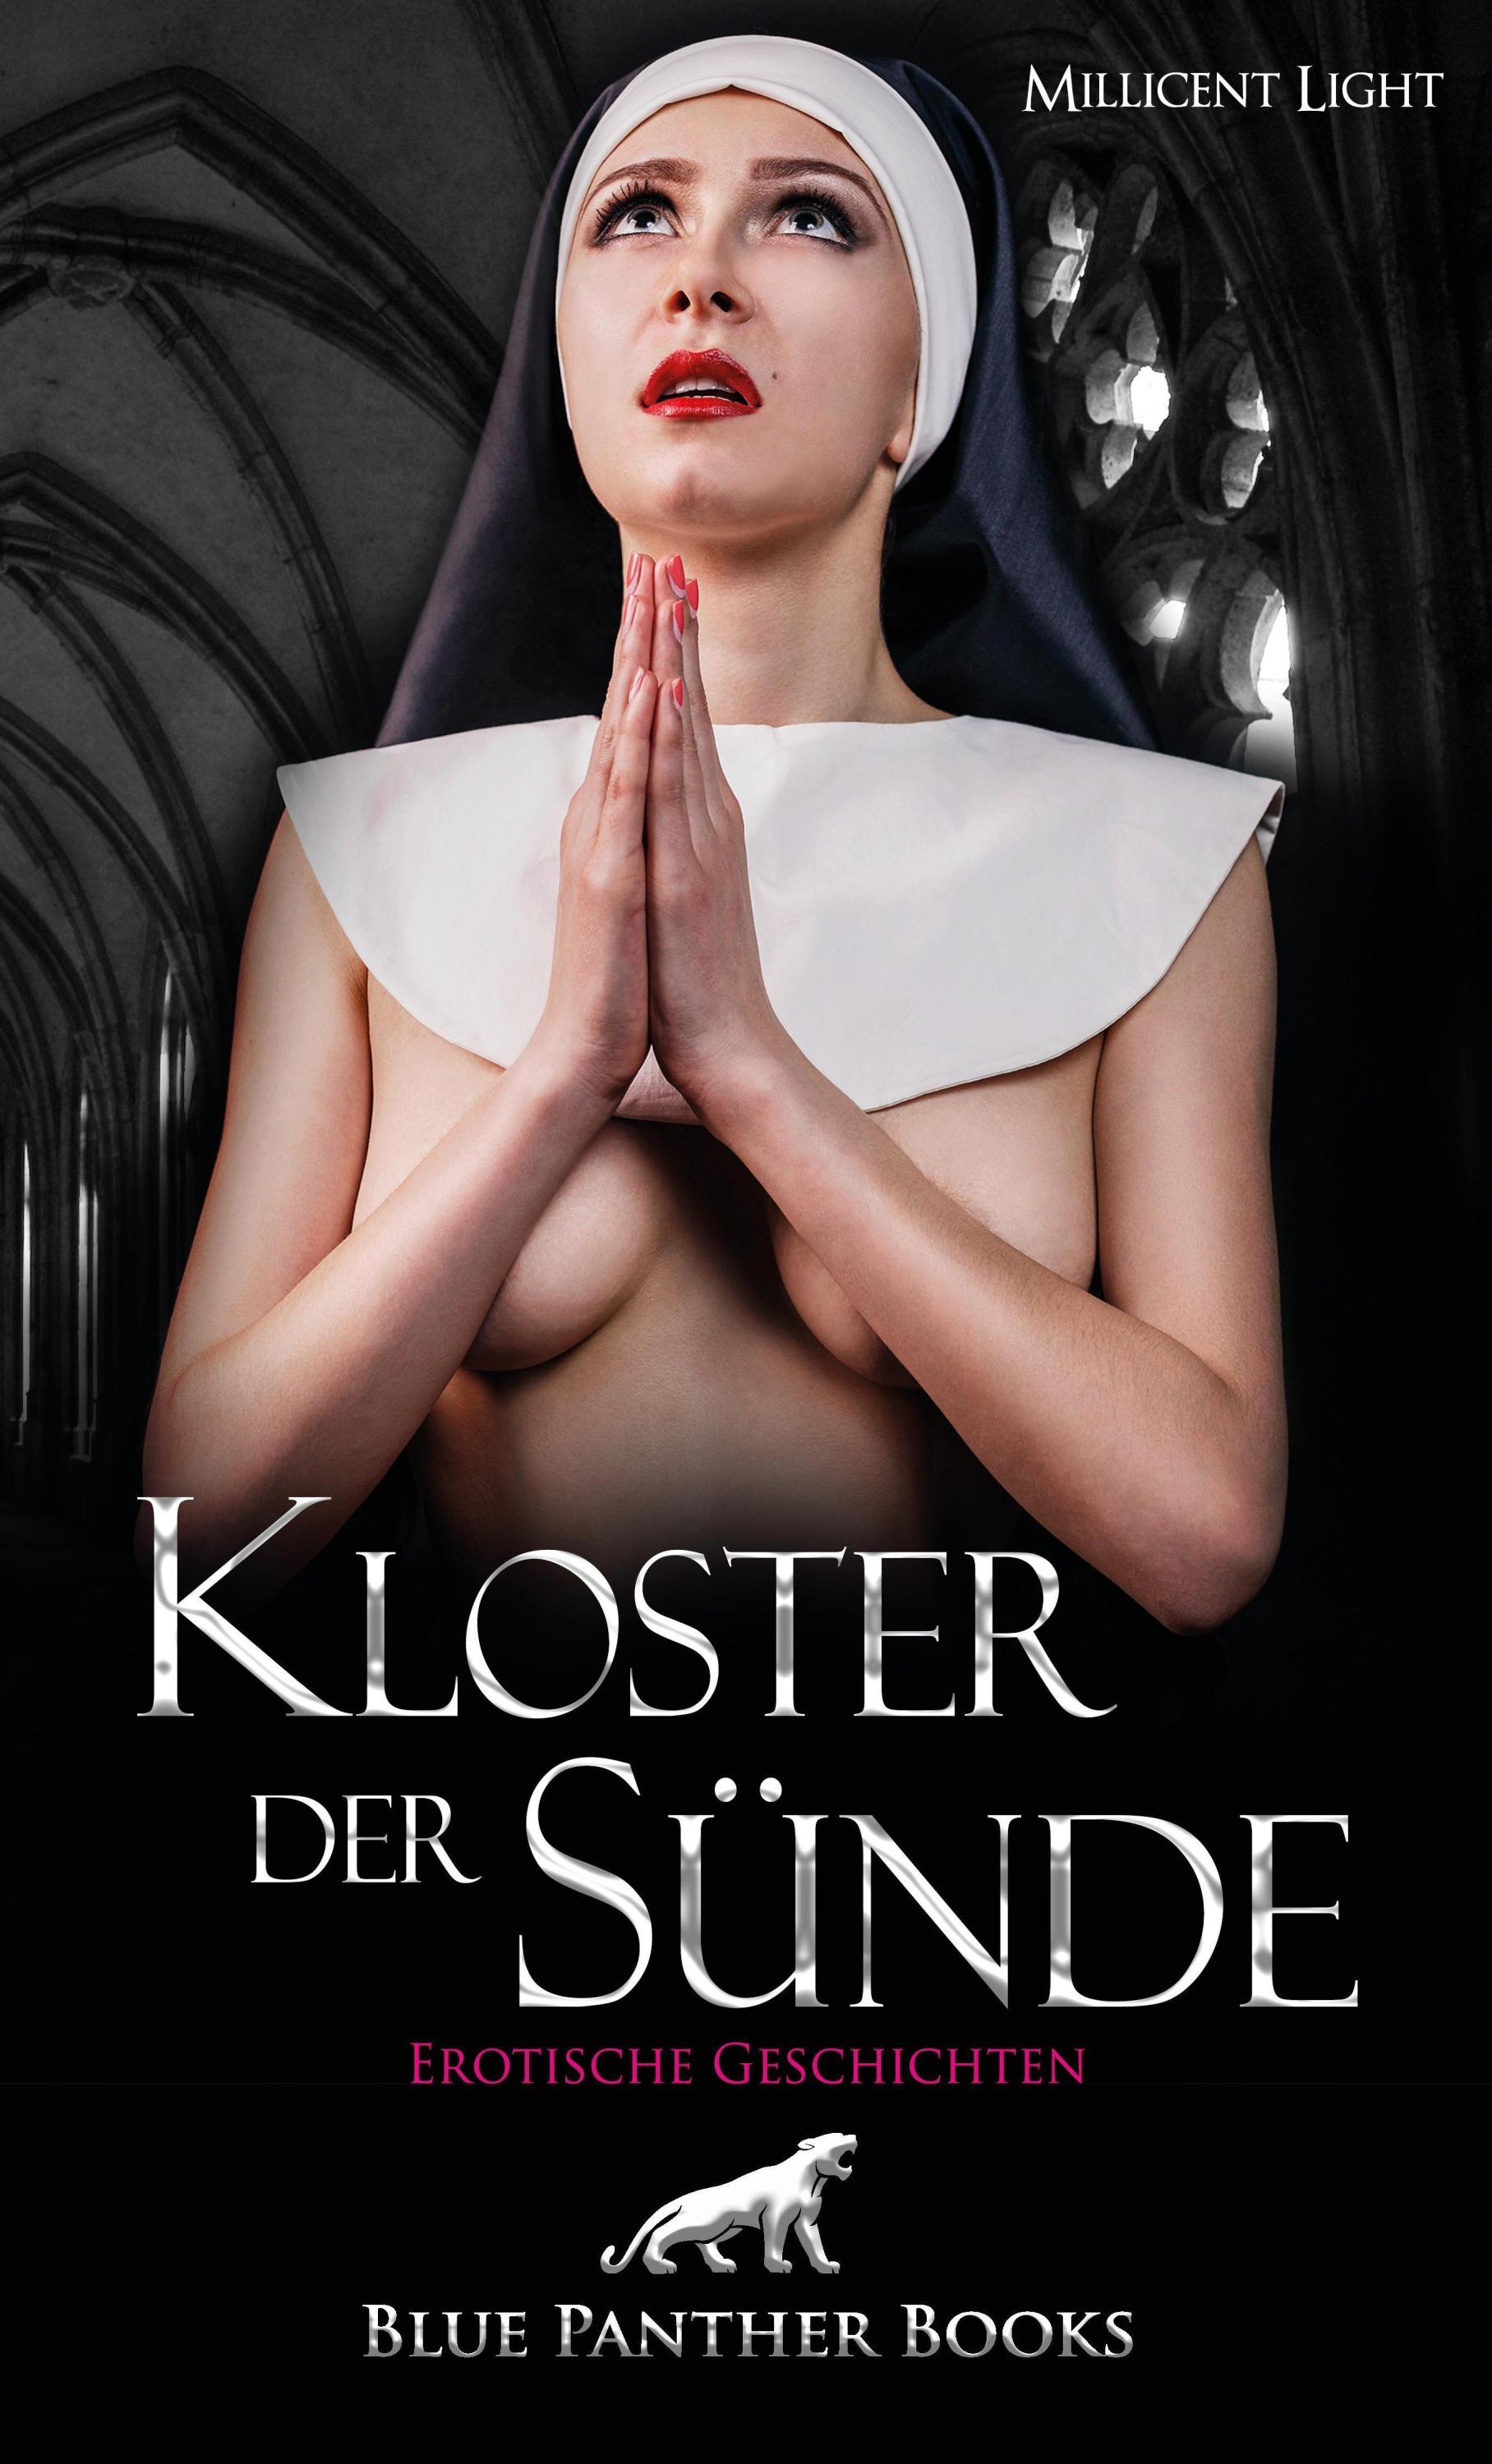 Kloster der Sünde Erotischer Roman Buch bei Weltbild.ch bestellen